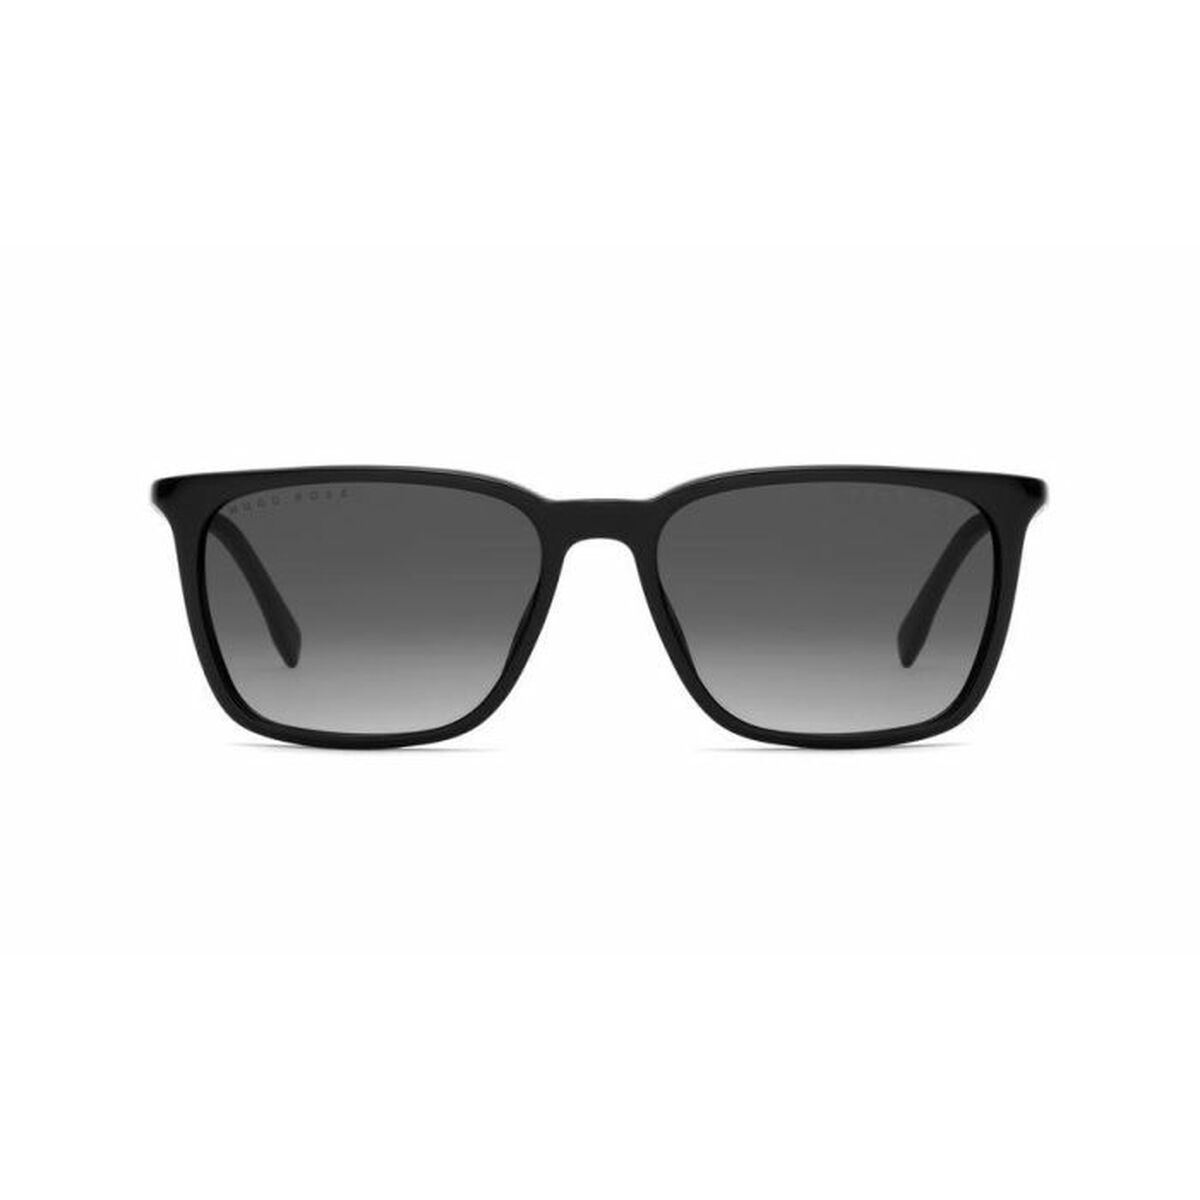 Men's Sunglasses Hugo Boss BOSS-0959-S-IT-807-9O ø 56 mm